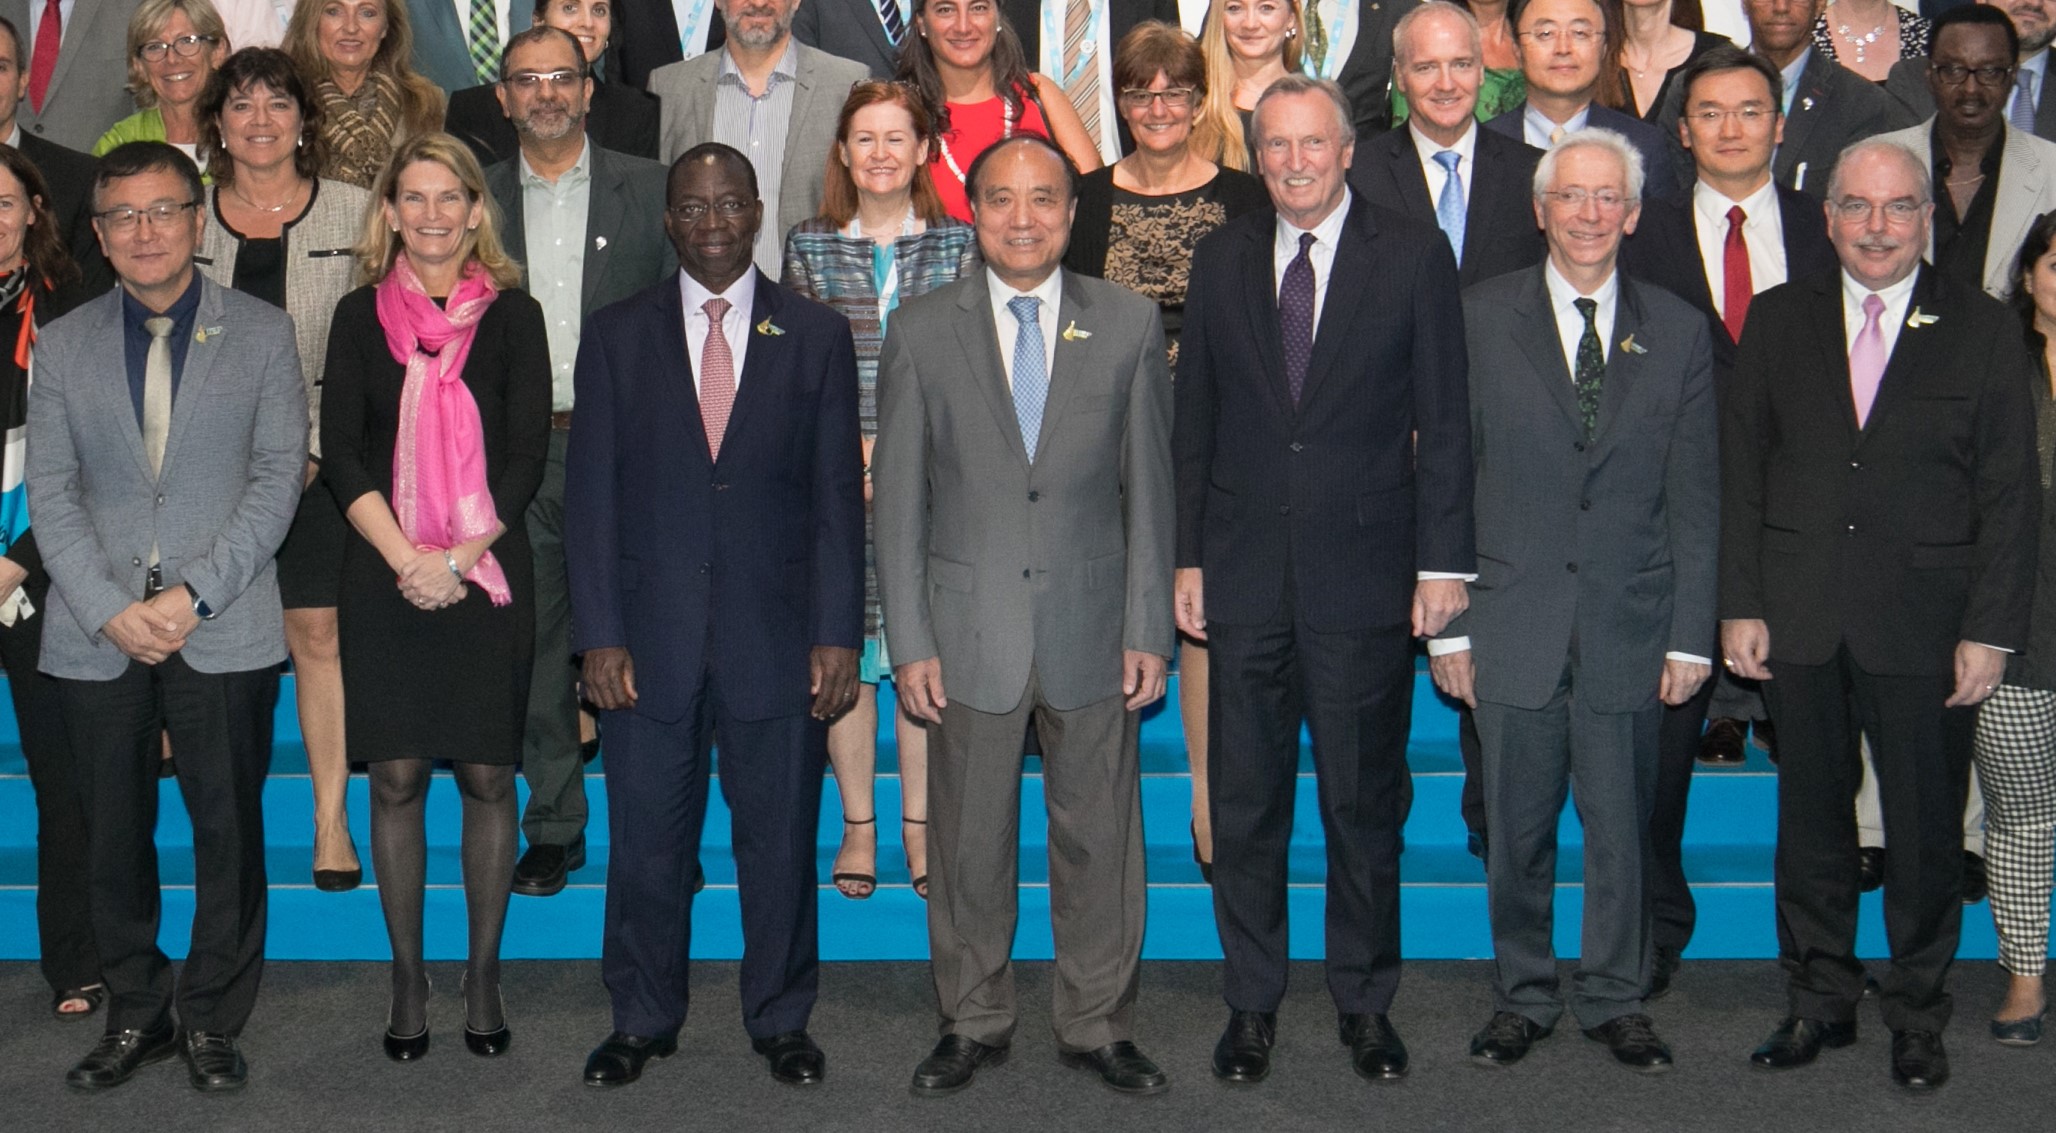 ITU Leadership 2018-2019.jpg